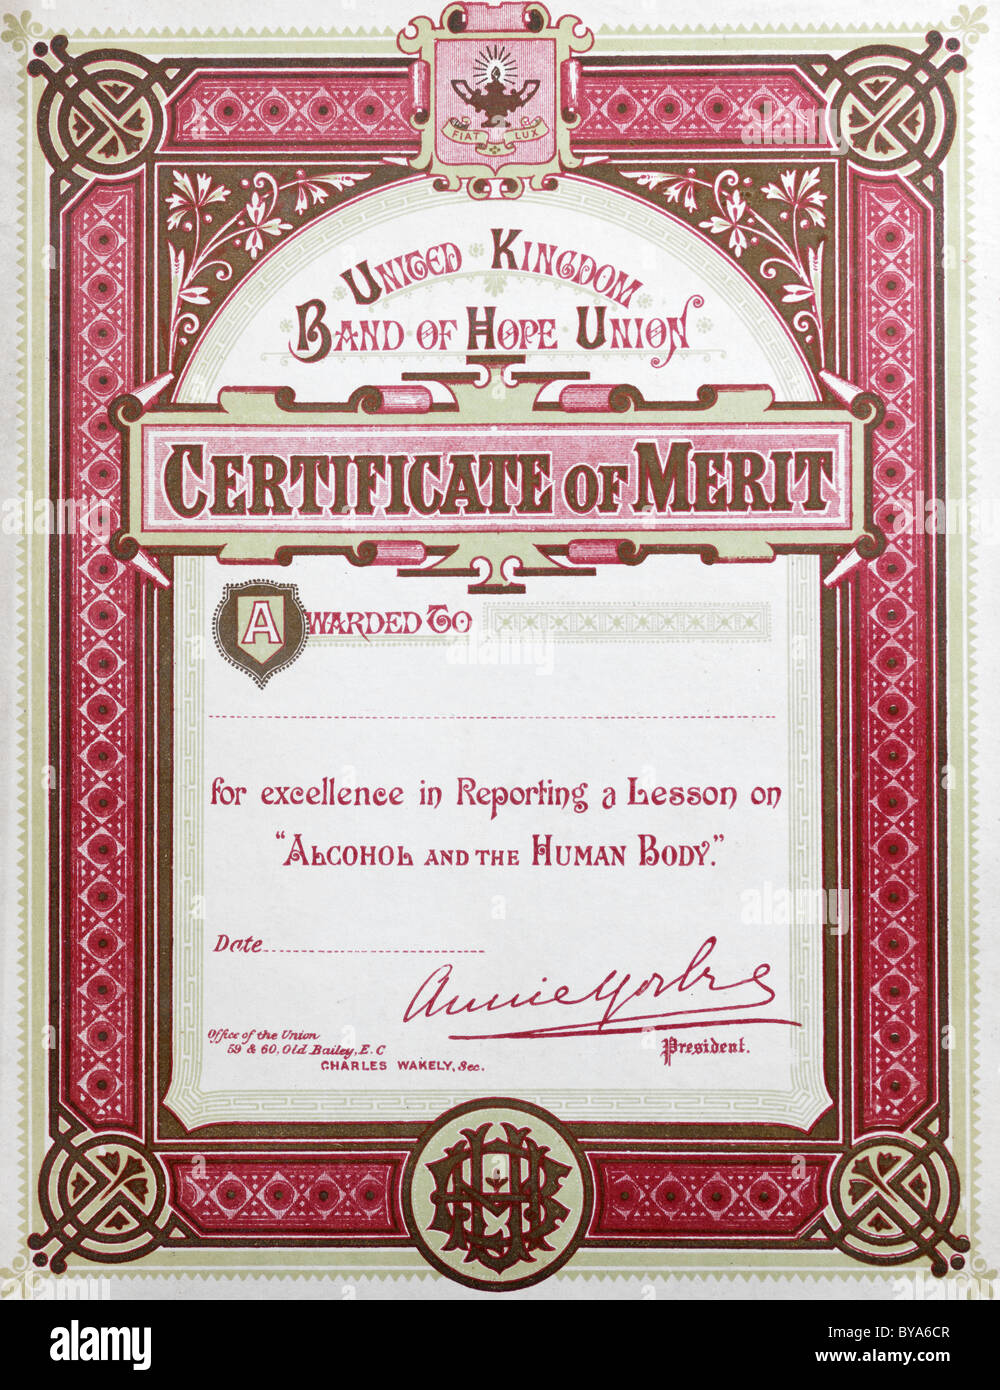 Certificate of merit Banque de photographies et d'images à haute résolution  - Alamy